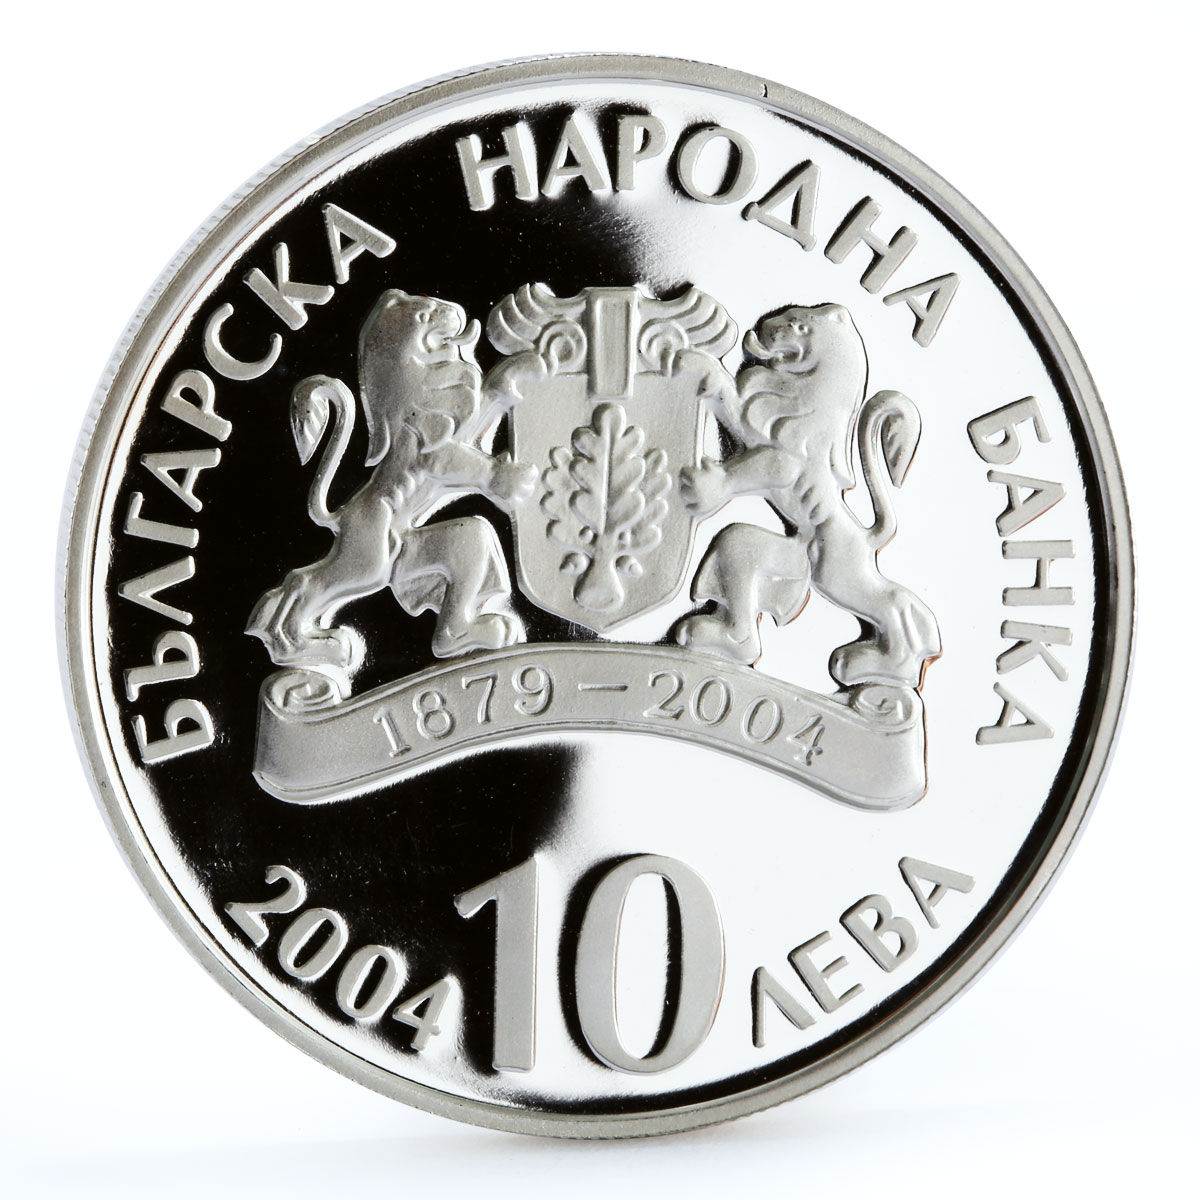 Bulgaria 10 leva Centennial of the Ivan Vazov National Theatre silver coin 2004